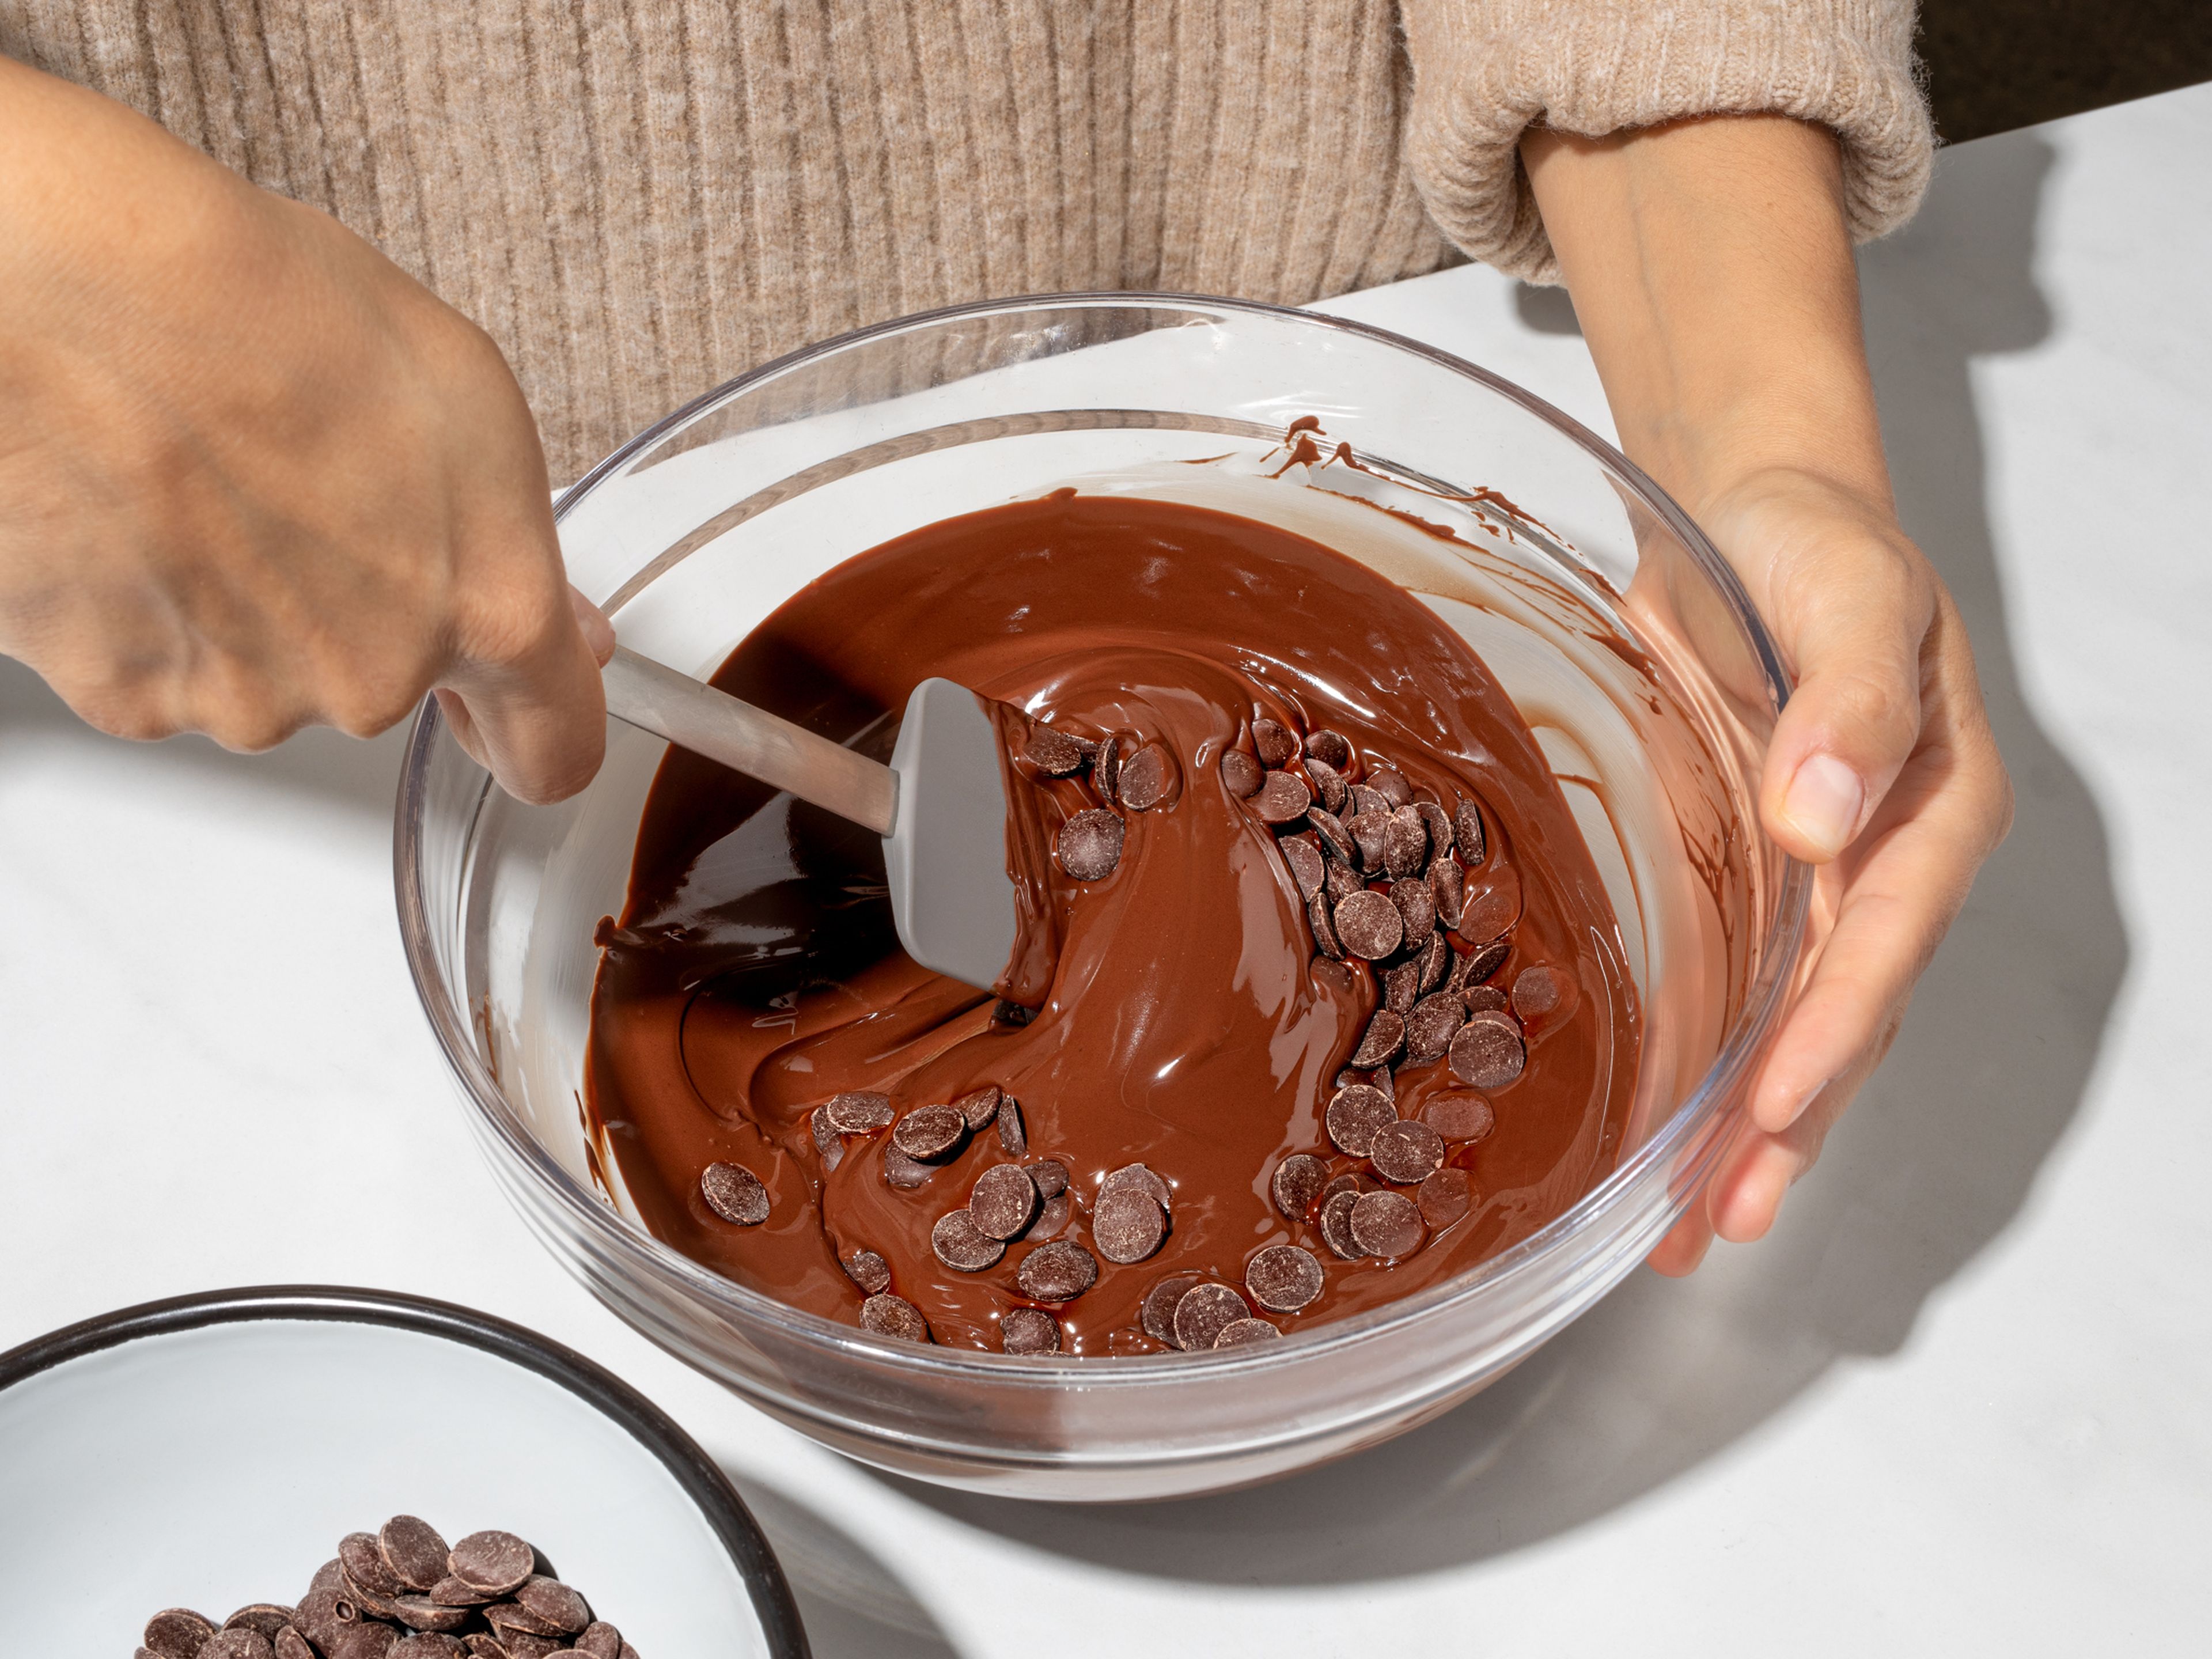 Zartbitter- und Vollmichschokolade hacken (alternativ können auch ungehackte Schokodrops verwendet werden) und jeweils ein Drittel der Schokolade zum Temperieren beiseitestellen. Zwei Drittel der Schokolade jeweils in einer hitzebeständigen Schüssel über einem Topf mit köchelndem Wasser schmelzen. Die geschmolzene Schokolade vom Herd nehmen und jeweils das übrige Drittel darin schmelzen lassen. Ca. 10 Min. abkühlen lassen, dabei gelegentlich mit einem Gummispatel umrühren. In der Zwischenzeit ein Backblech mit Backpapier auslegen und mit etwas Goldstaub besprühen. Dabei eventuell die Ecken des Backpapiers mit etwas flüssiger Schokolade fixieren, um ein Verrutschen des Backpapiers zu verhindern.